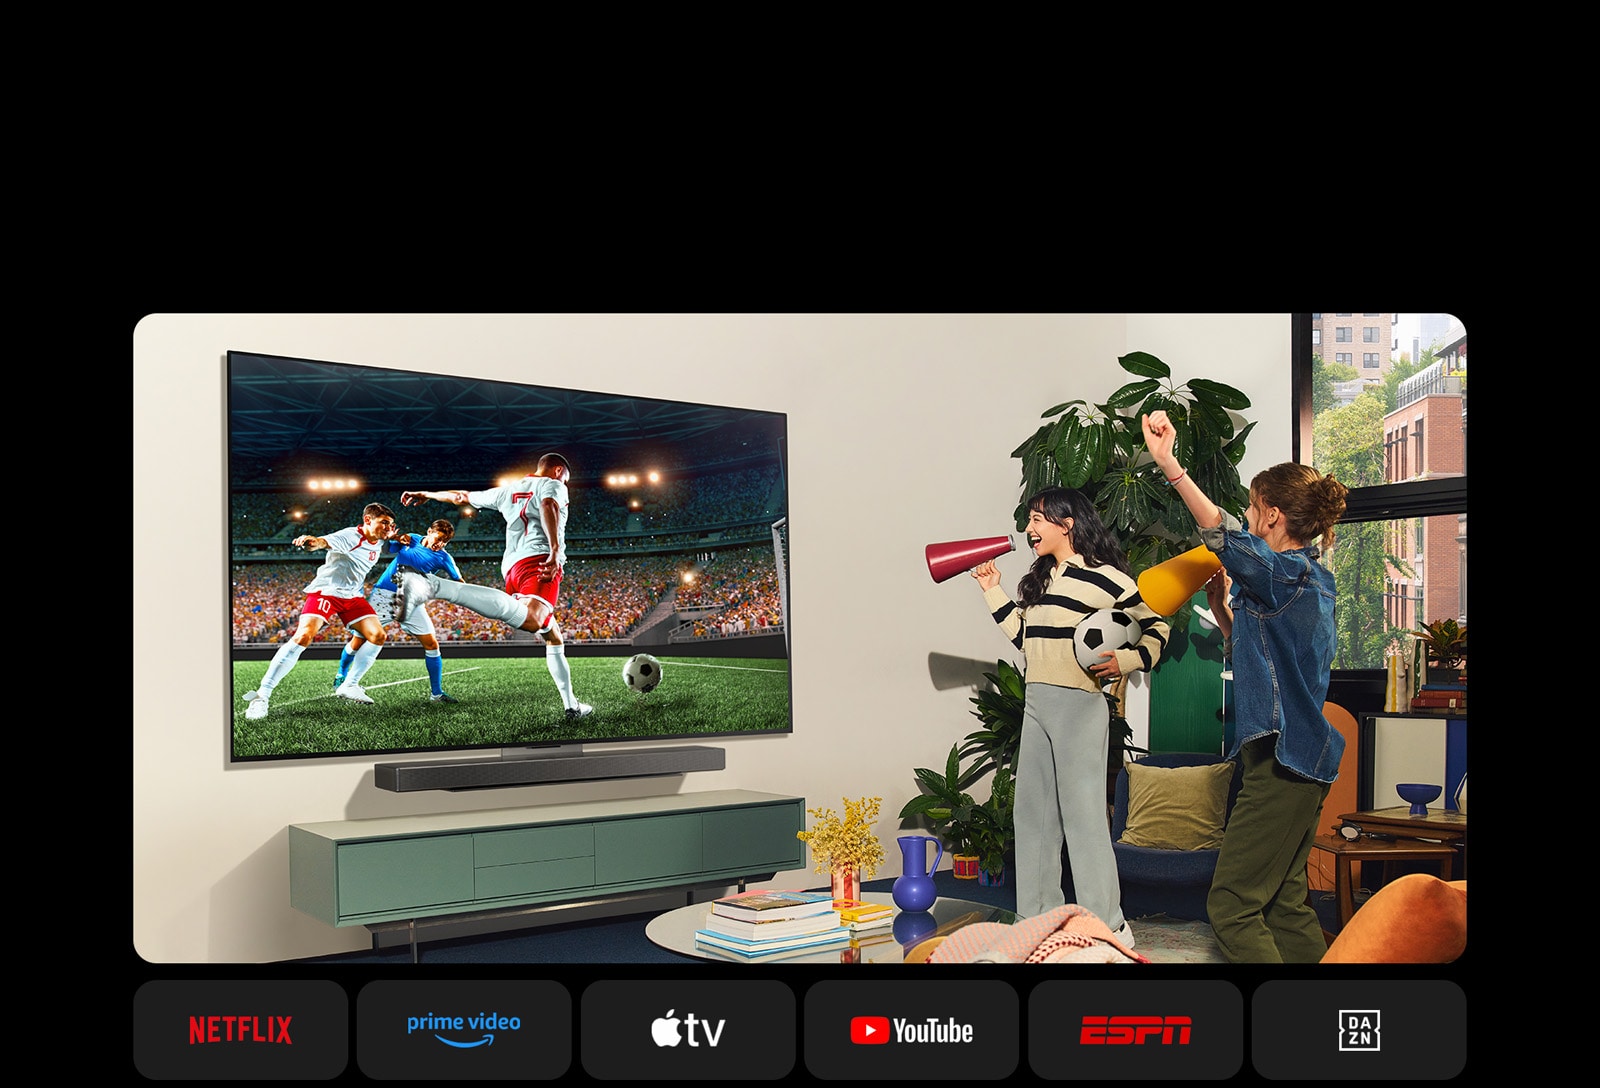 Kaks naist vaatavad hubases eluruumis jalgpallimängu. Üks naine hoiab käes jalgpalli ja mõlemad elavad oma meeskondadele kaasa kollaste ja punaste kõlarite abil. Allpool on näidatud järgmised logod. Netflix, Amazon Prime Video, Apple TV, Youtube, ESPN ja DAZN.